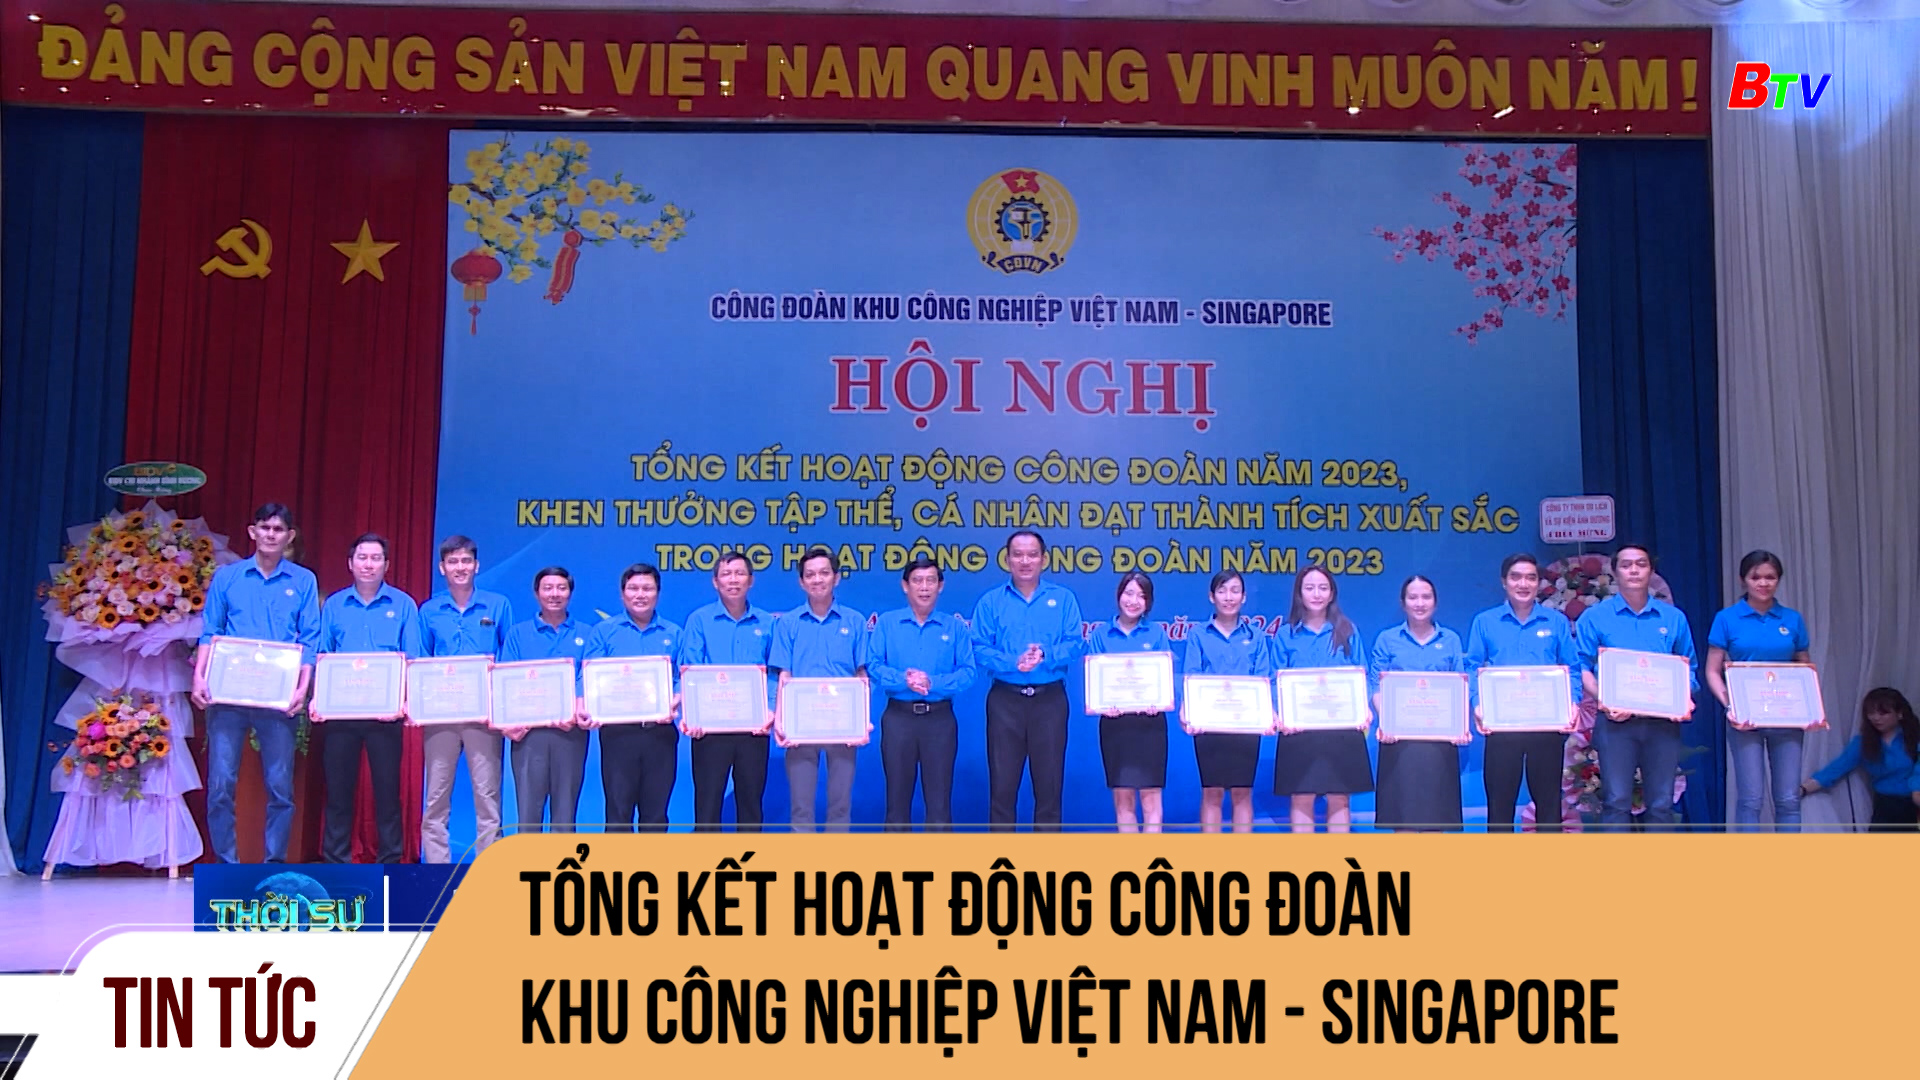 Tổng kết hoạt động Công đoàn Khu công nghiệp Việt Nam - Singapore